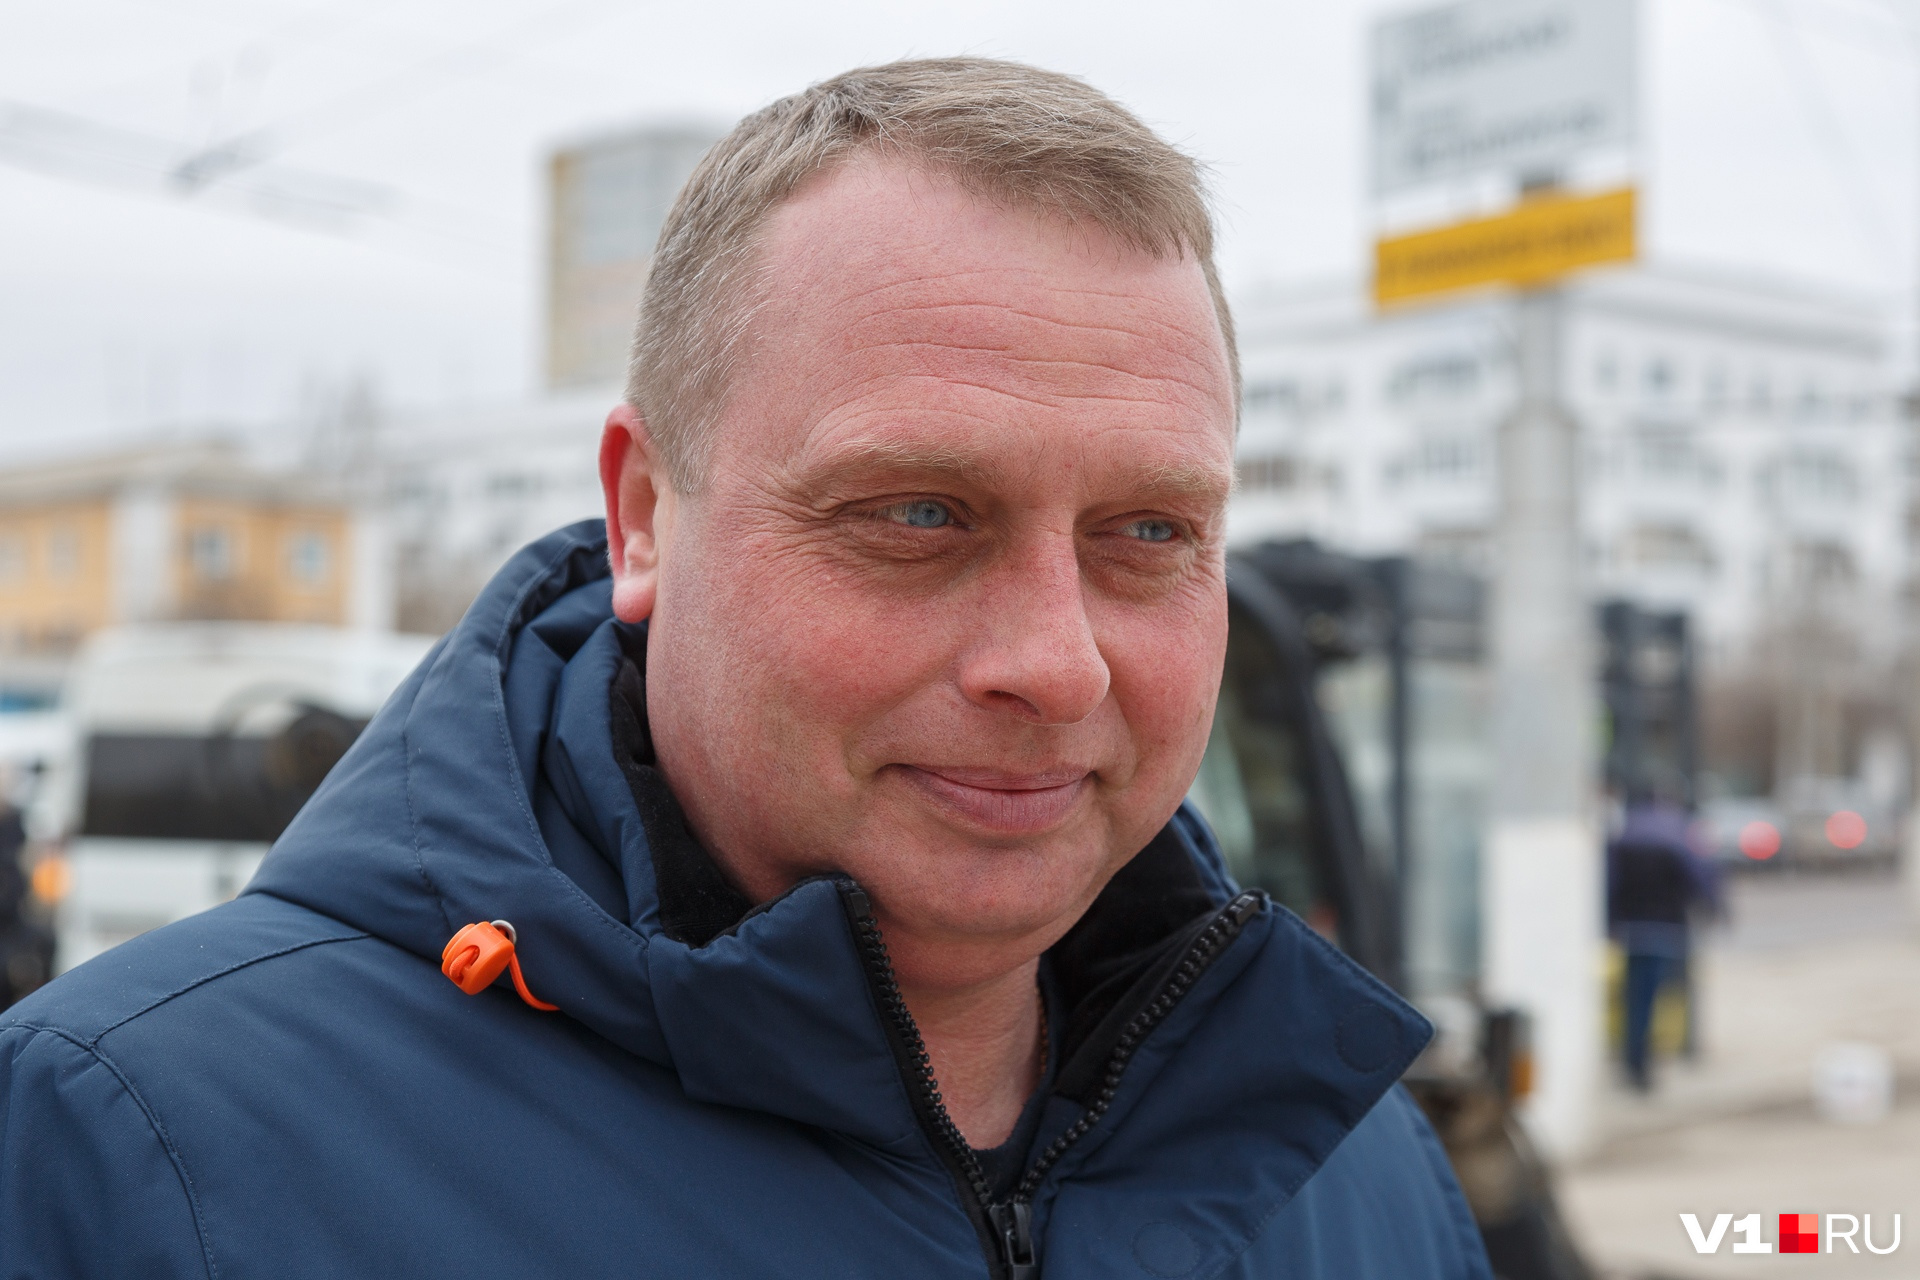 Директор МБУ «Волгоградзеленхоз» Павел Целковский уверяет, что тщательно следил за каждым этапом выполненных работ